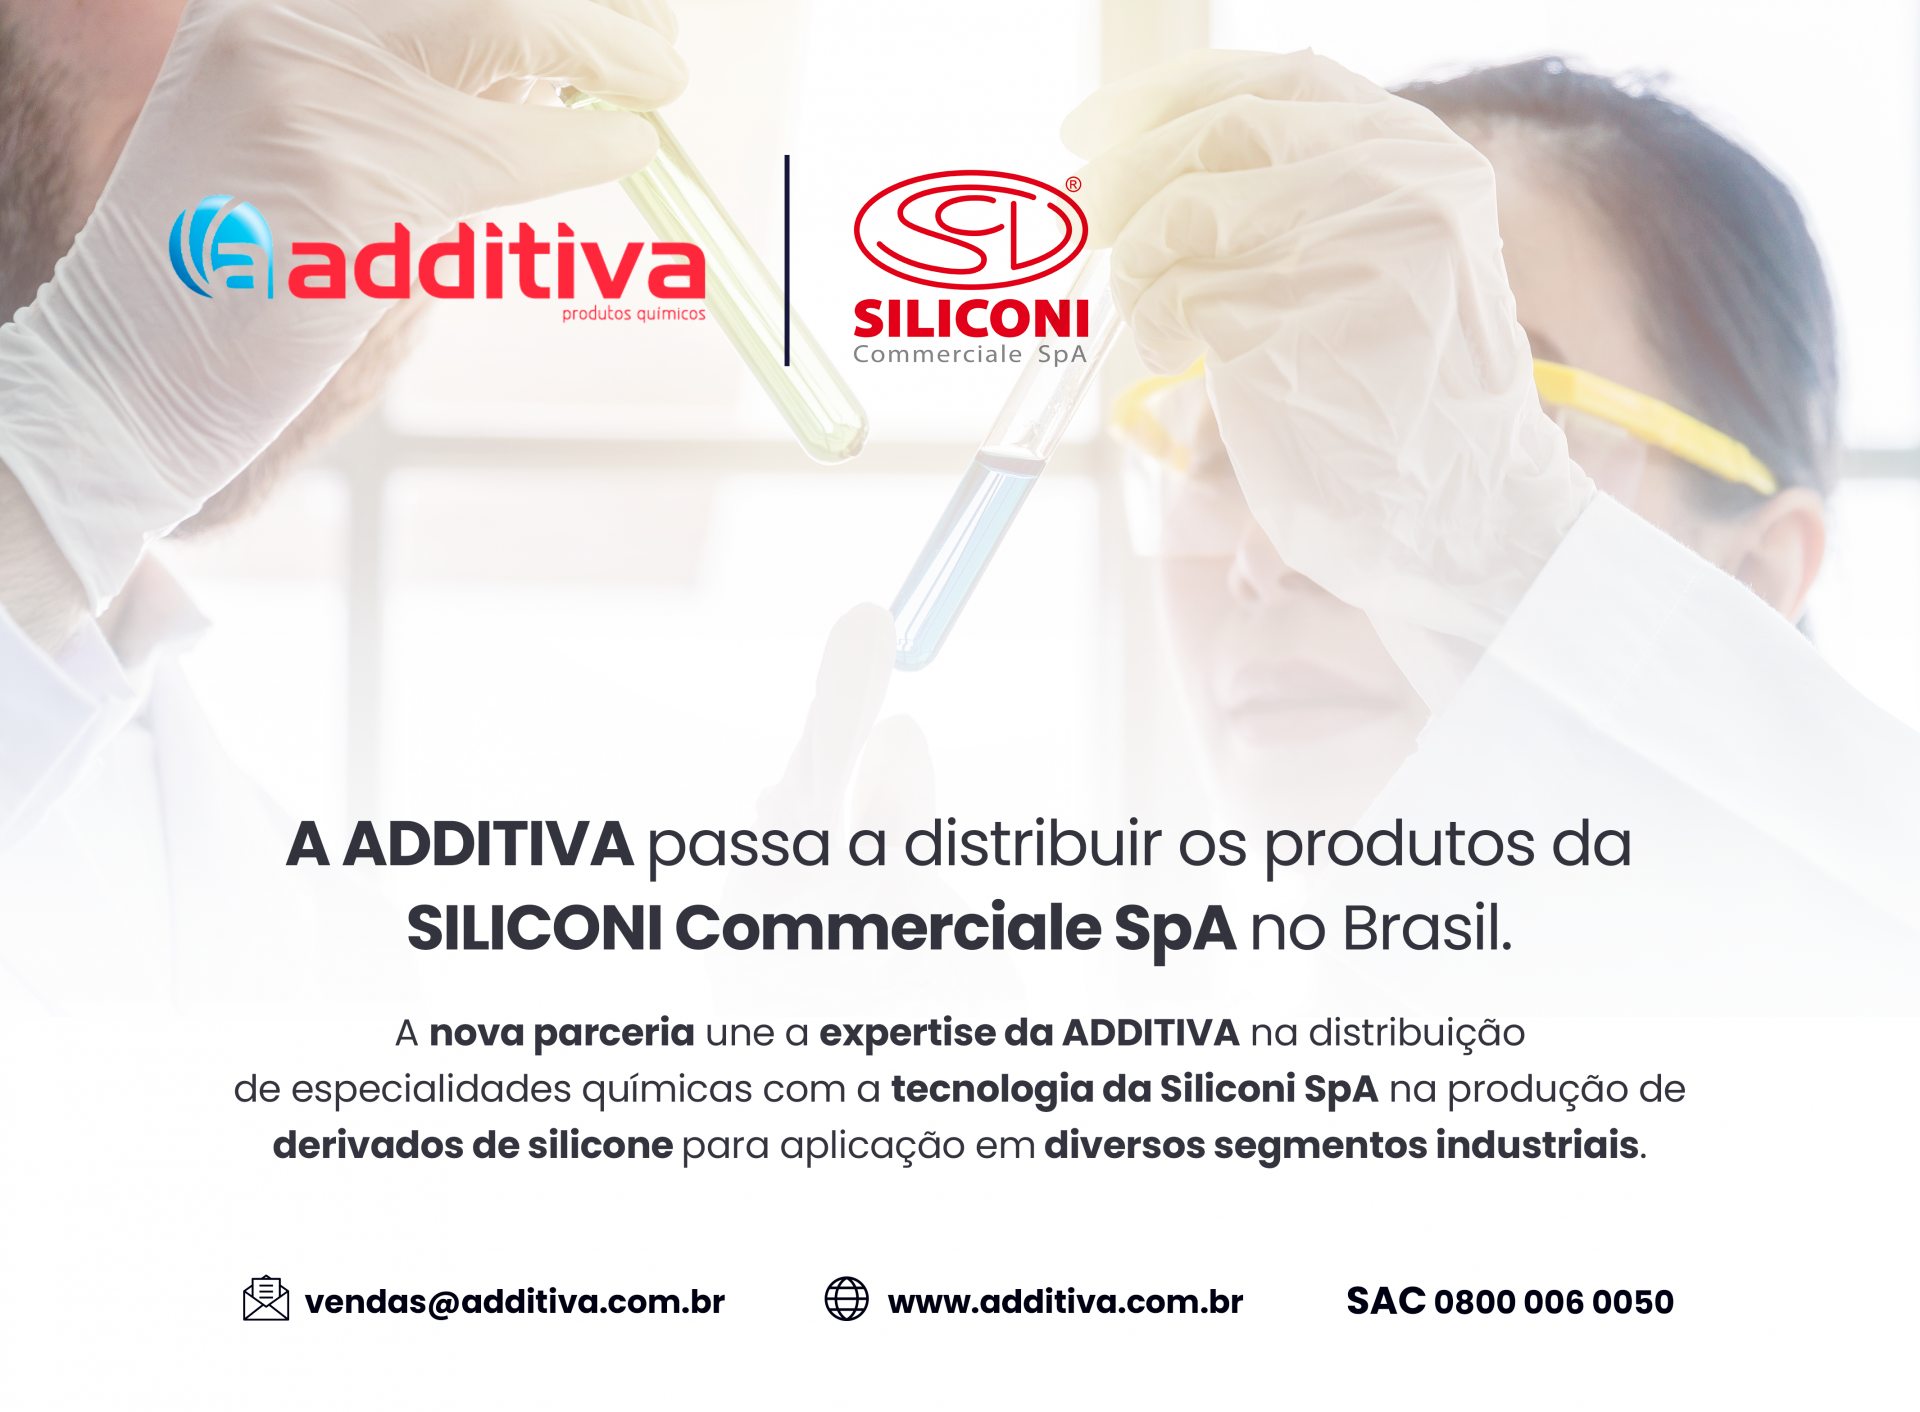 ADDITIVA fecha acordo para a distribuição do portfólio de derivados de silicones da SILICONI SpA.